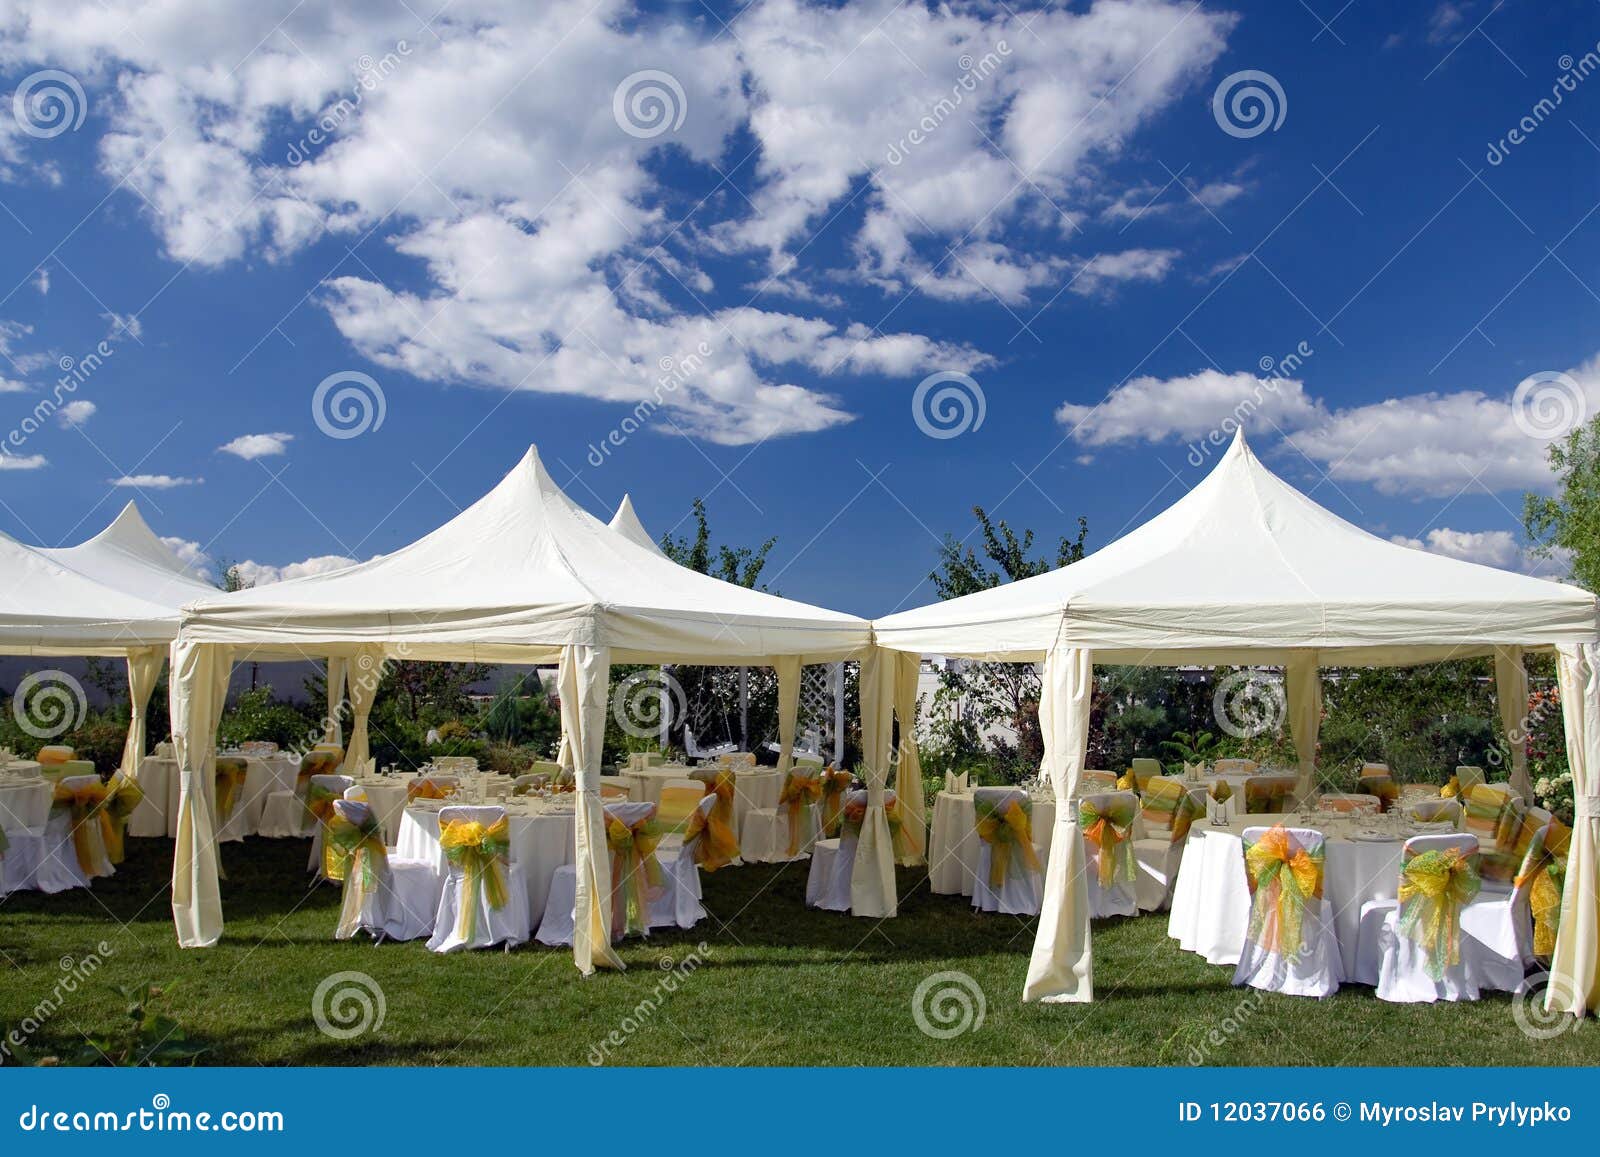 婚礼派对篷房-广州卡帕帐篷有限公司